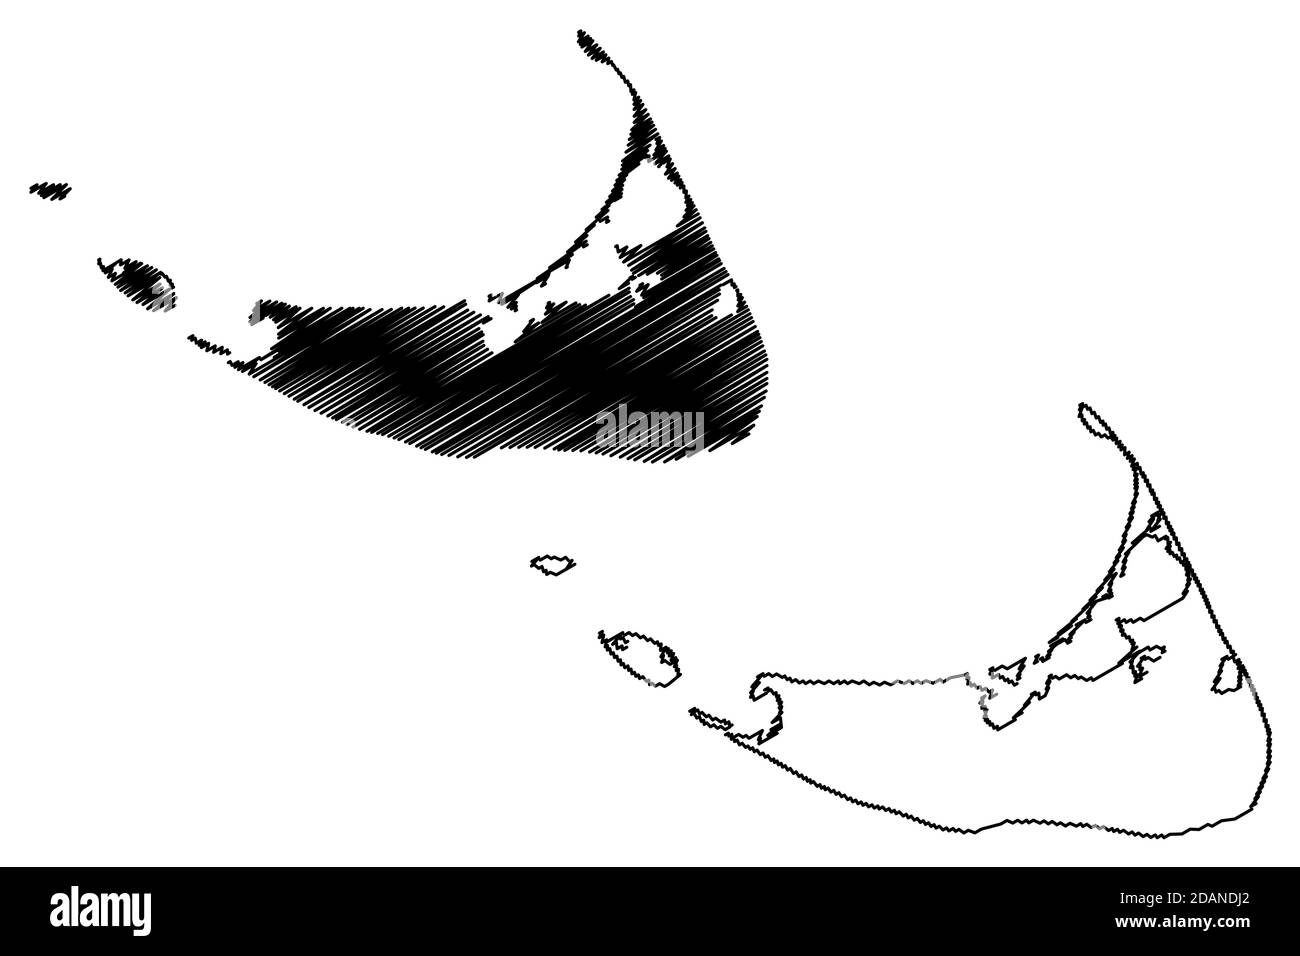 Nantucket Town and County, Commonwealth of Massachusetts (Stati Uniti, Stati Uniti d'America, Stati Uniti, Stati Uniti, Stati Uniti), illustrazione vettoriale mappa, sket scarabocchio Illustrazione Vettoriale